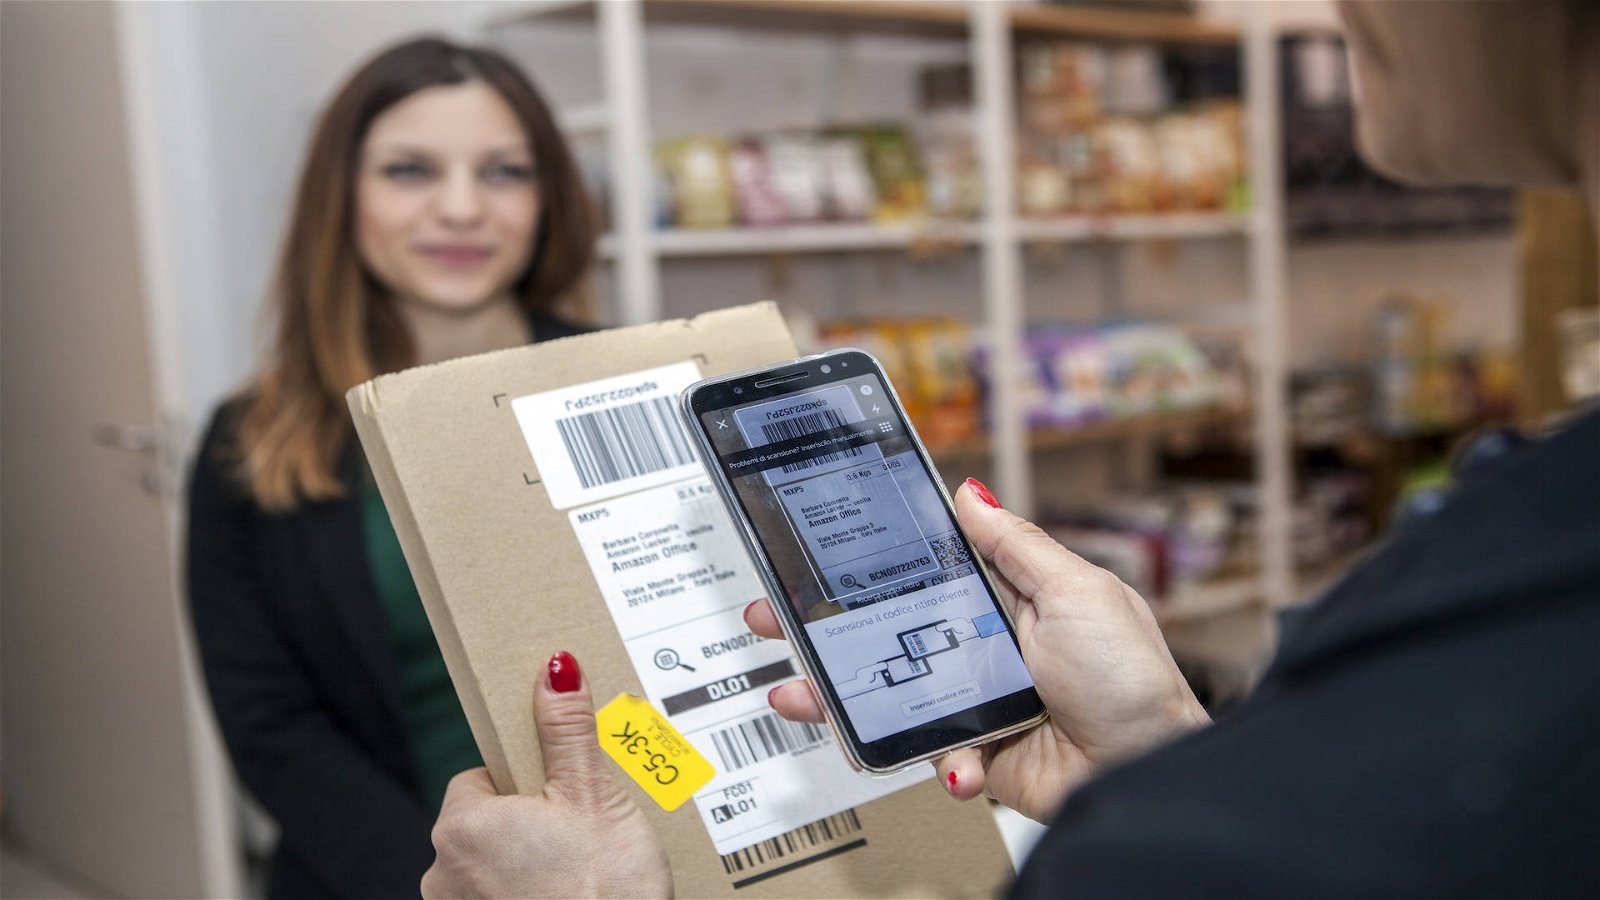 Immagine di Amazon Counter in Italia: ritiro pacchi in migliaia di negozi, tabaccherie e librerie Giunti